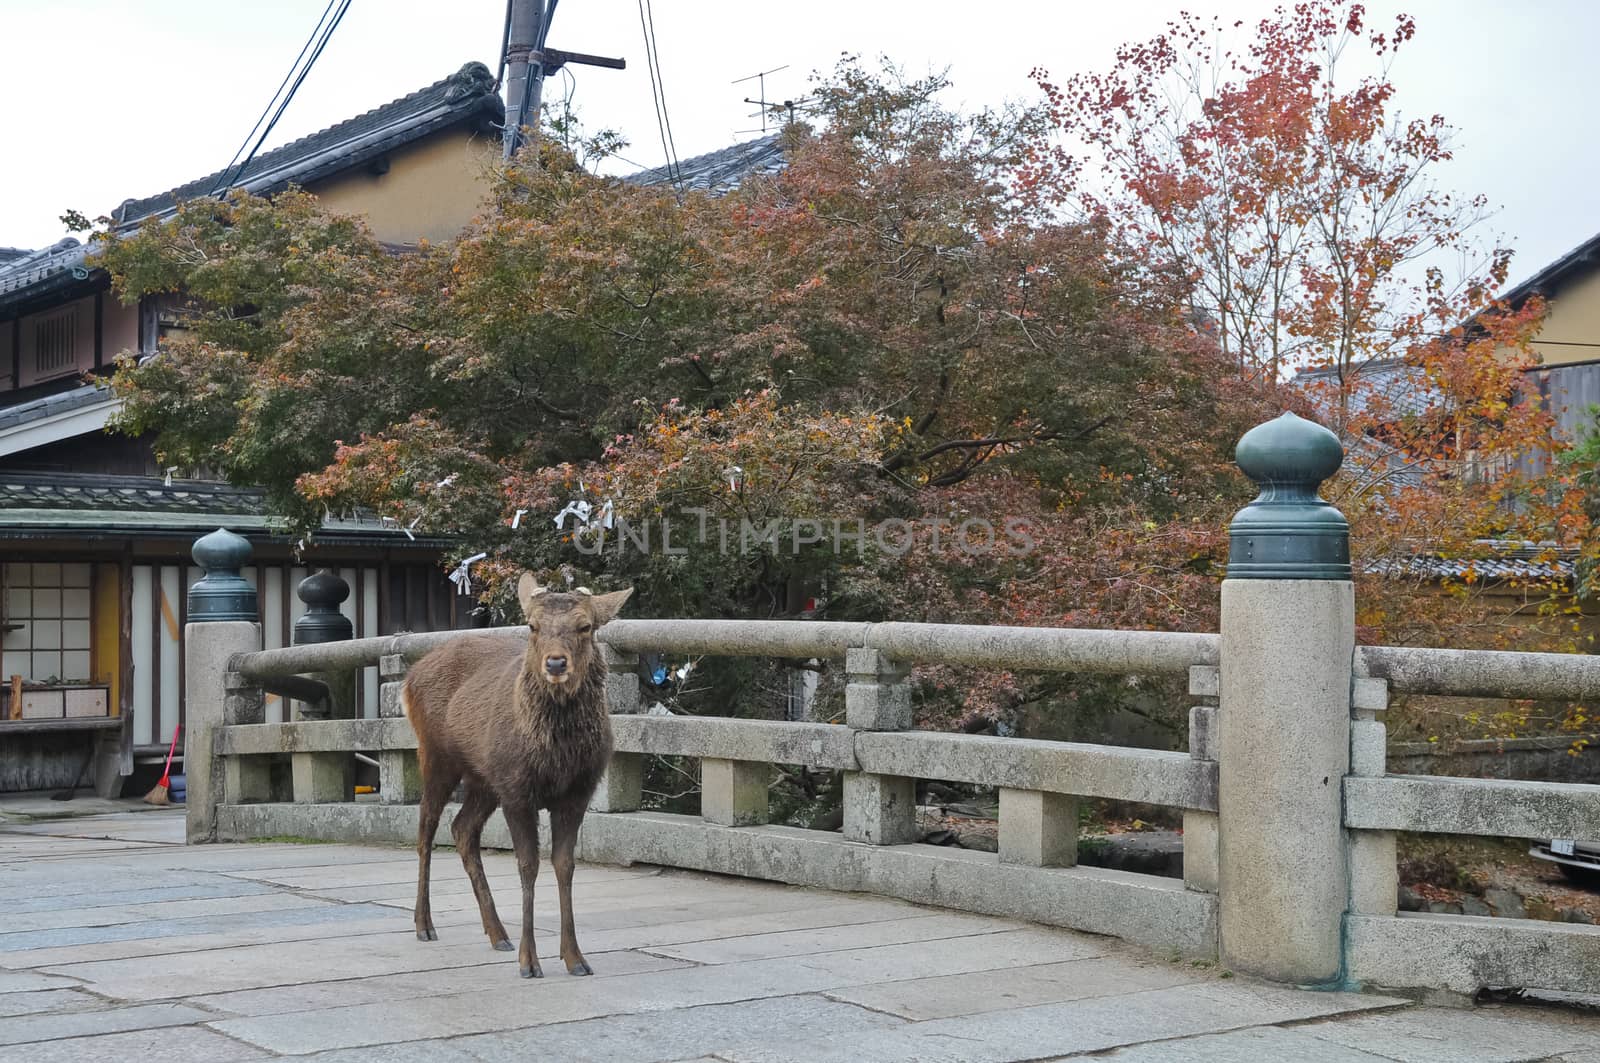 Japanese brown deer on an ancient stone bridge in Nara Japan by eyeofpaul